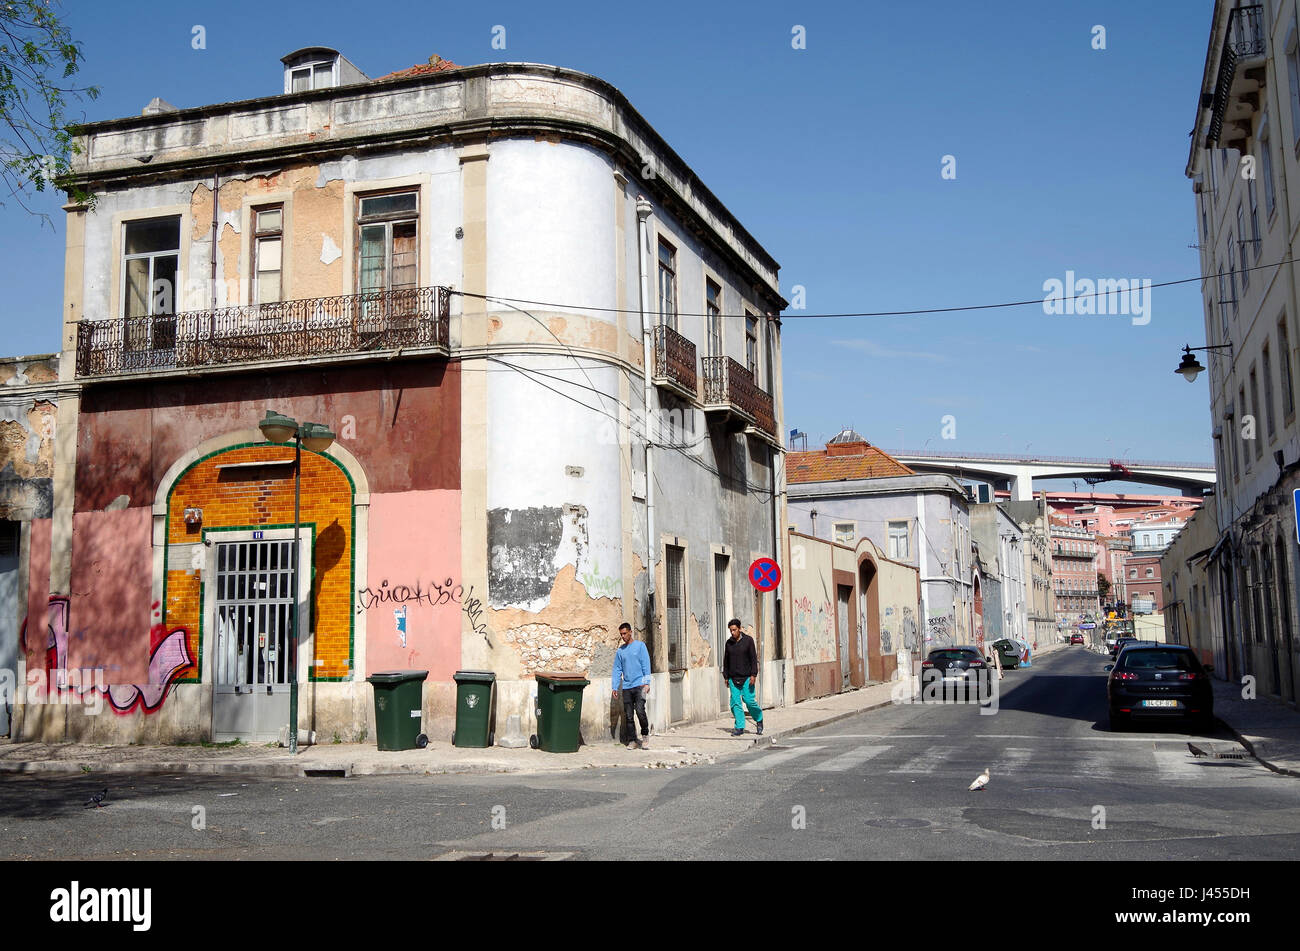 Rua cozinha economica hi-res stock photography and images - Alamy